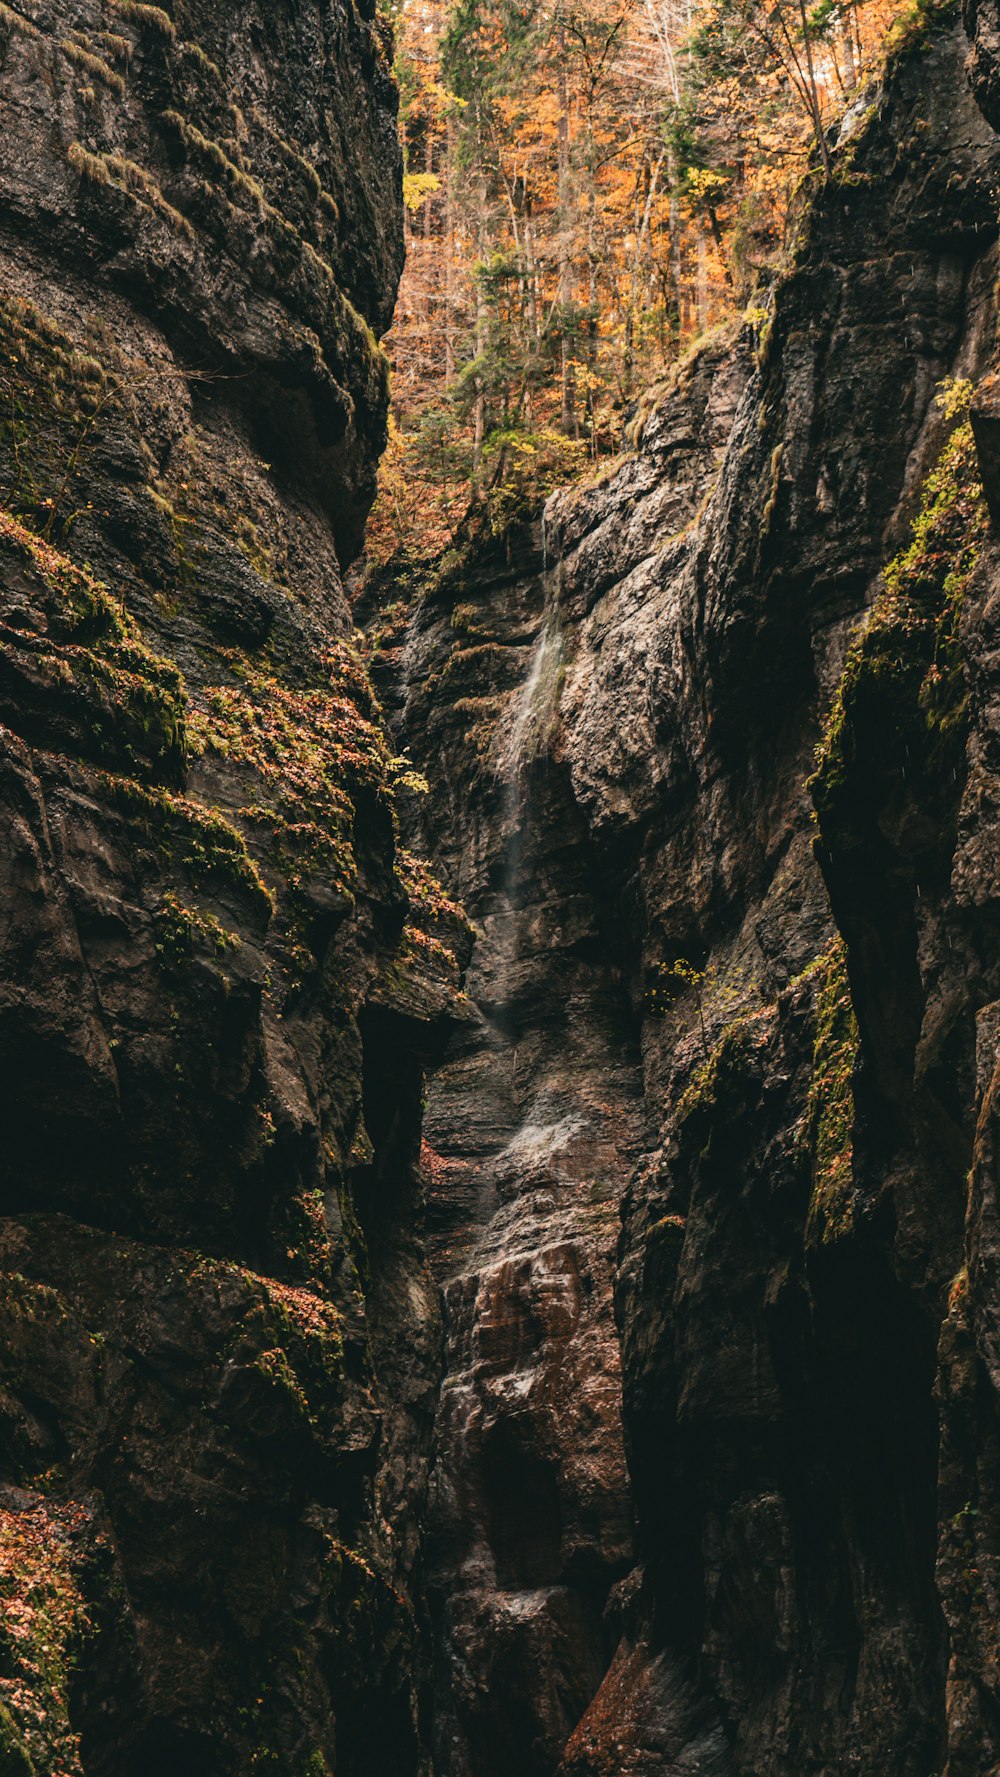 Una cascada en medio de una zona rocosa